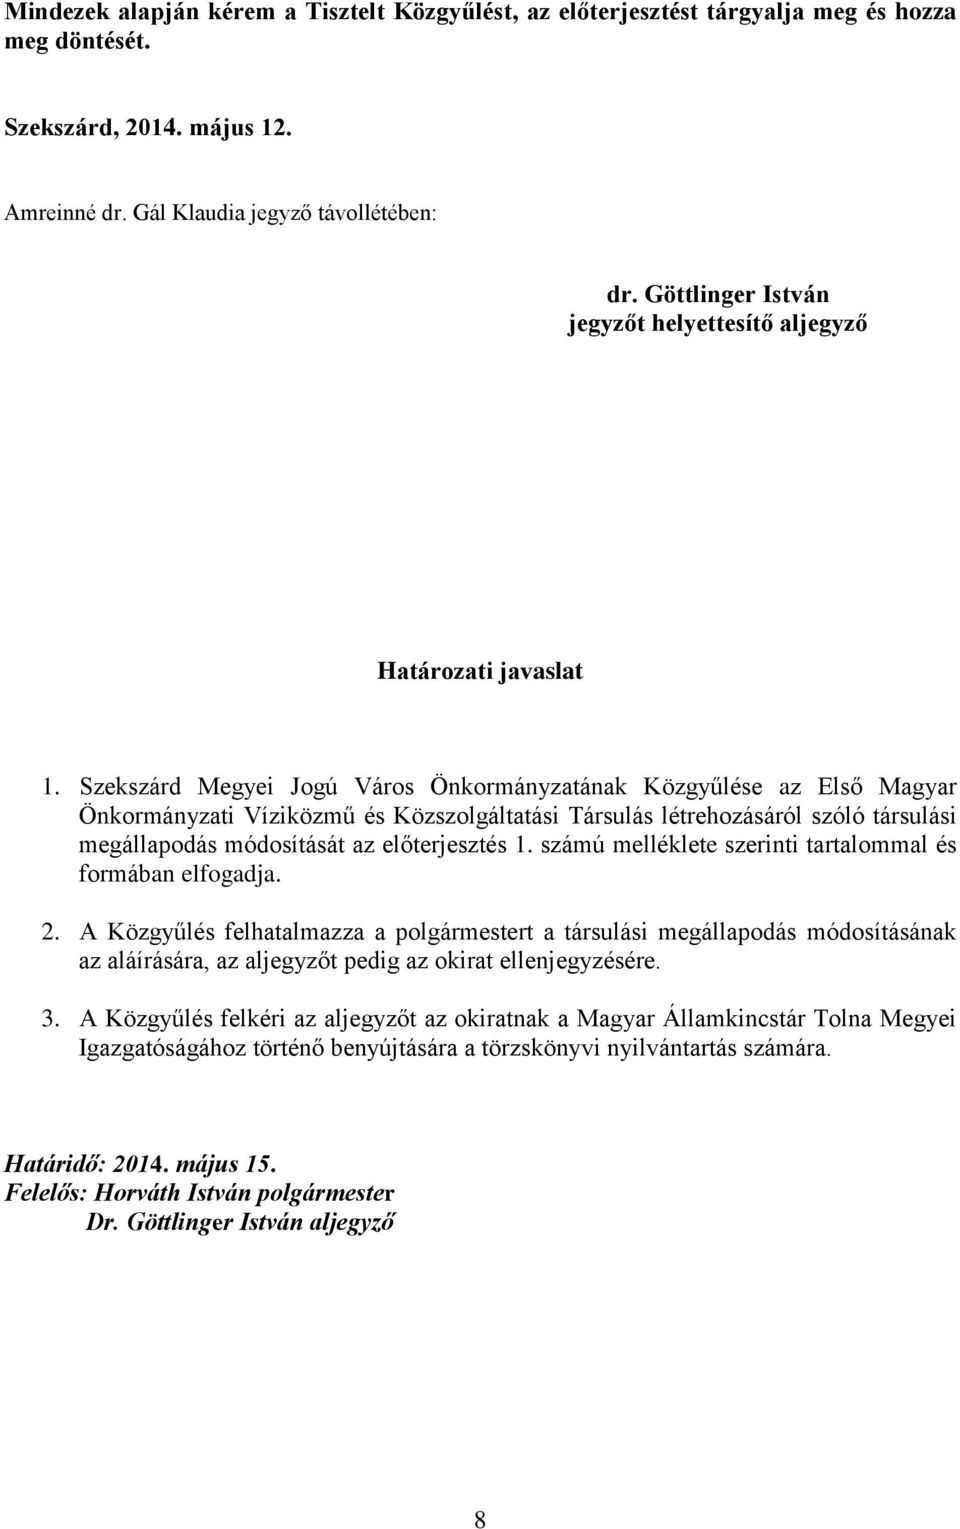 Szekszárd Megyei Jogú Város Önkormányzatának Közgyűlése az Első Magyar Önkormányzati Víziközmű és Közszolgáltatási Társulás létrehozásáról szóló társulási megállapodás módosítását az előterjesztés 1.